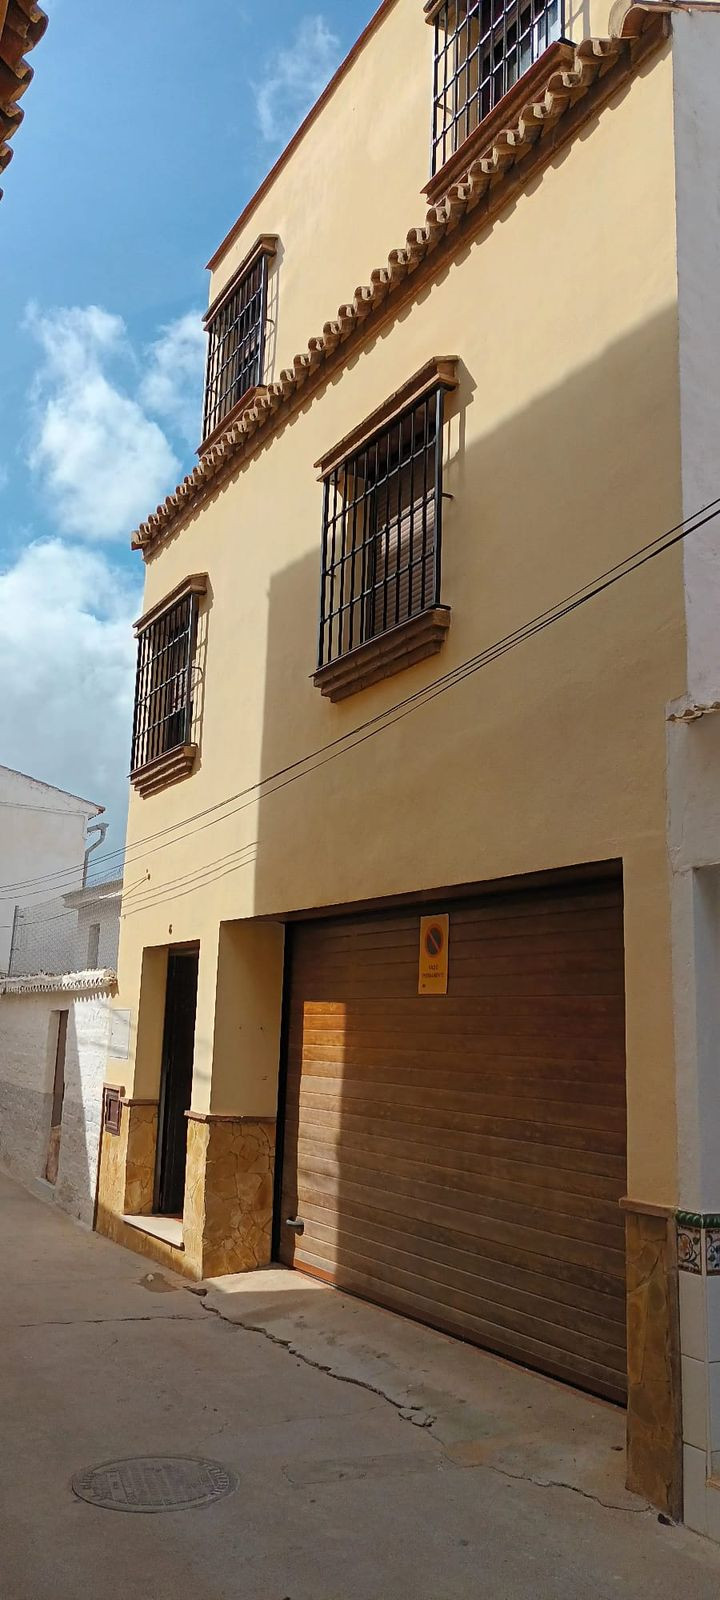 3 Bedroom Townhouse For Sale Alhaurín el Grande, Costa del Sol - HP4269421